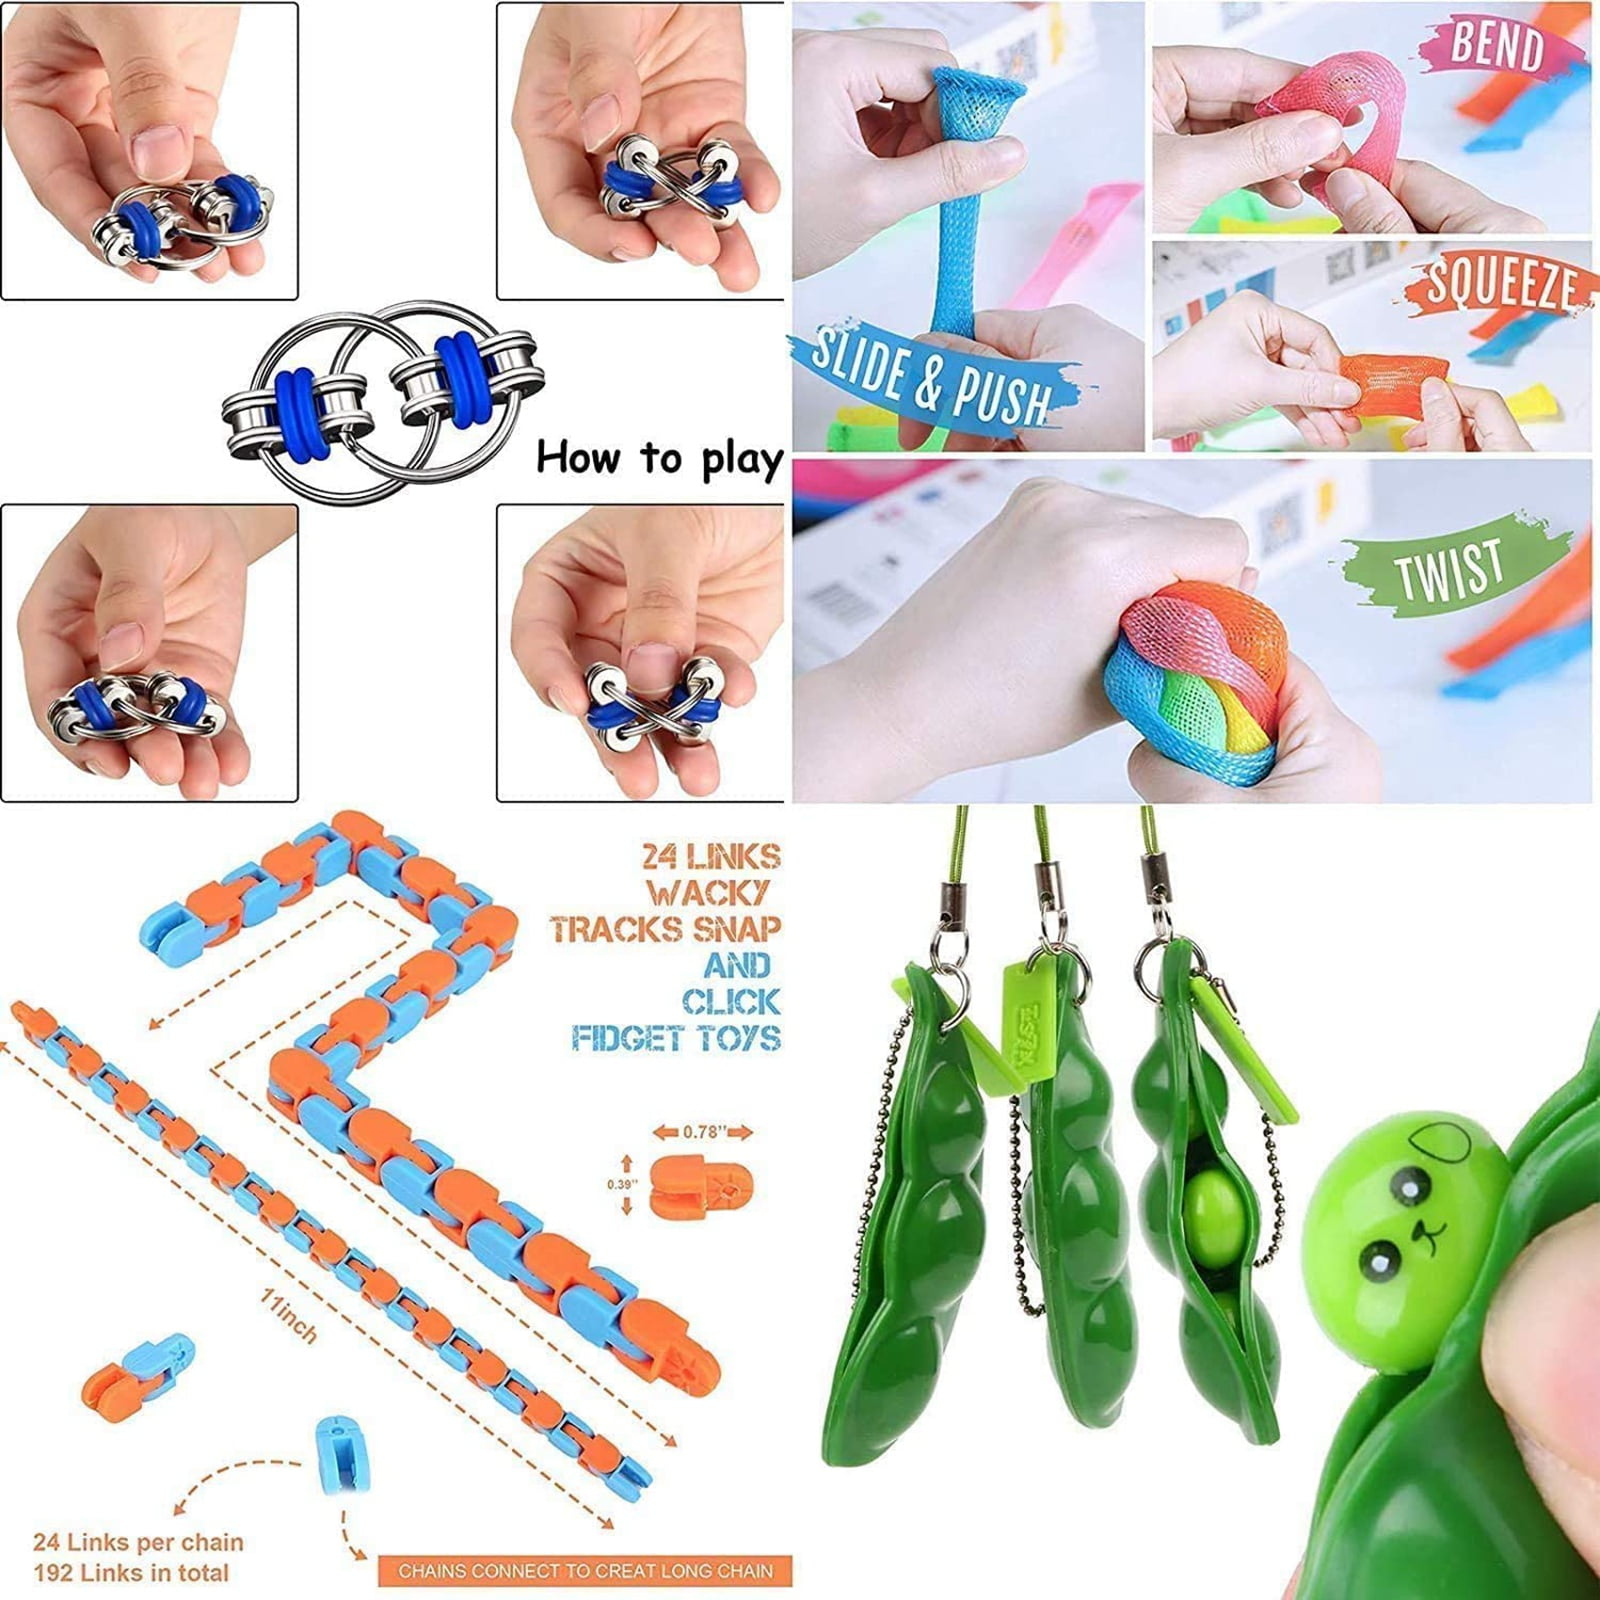 Details about   13 Pack Sensory Fidget Toys Set Stress Relief Simple bubble Wacky Tracks Snap US